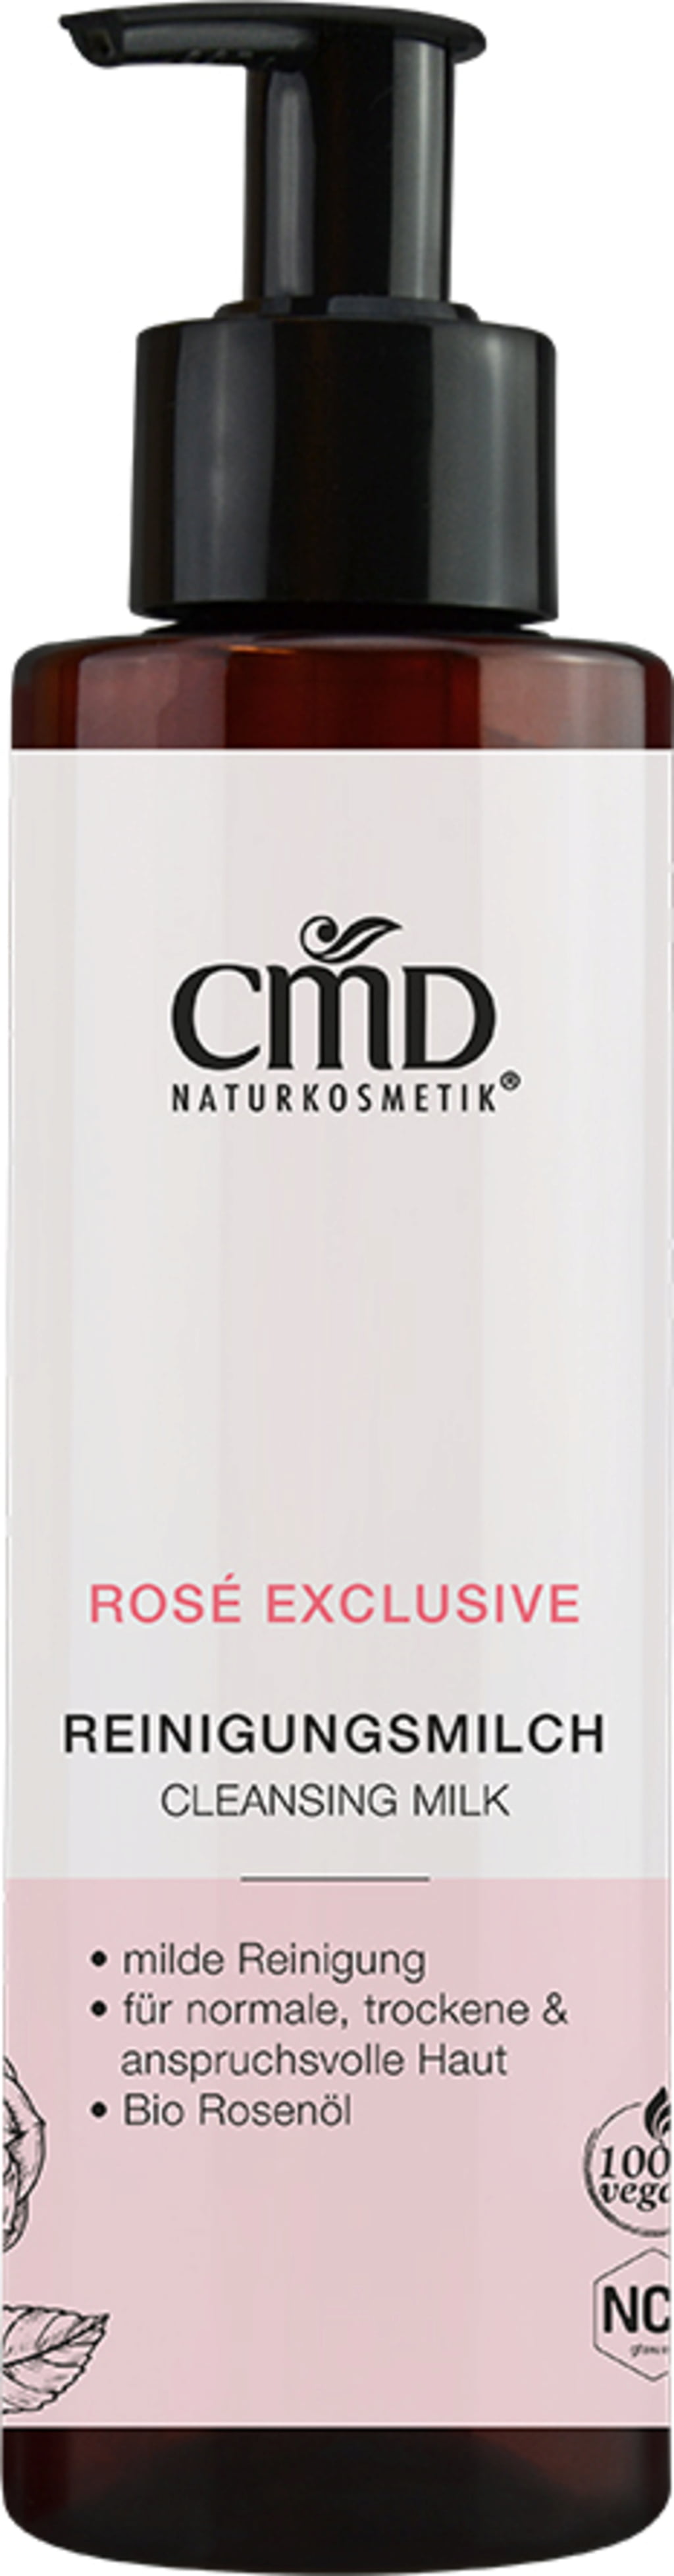 CMD Naturkosmetik Rosé Exclusive Reinigungsmilch - 200 ml